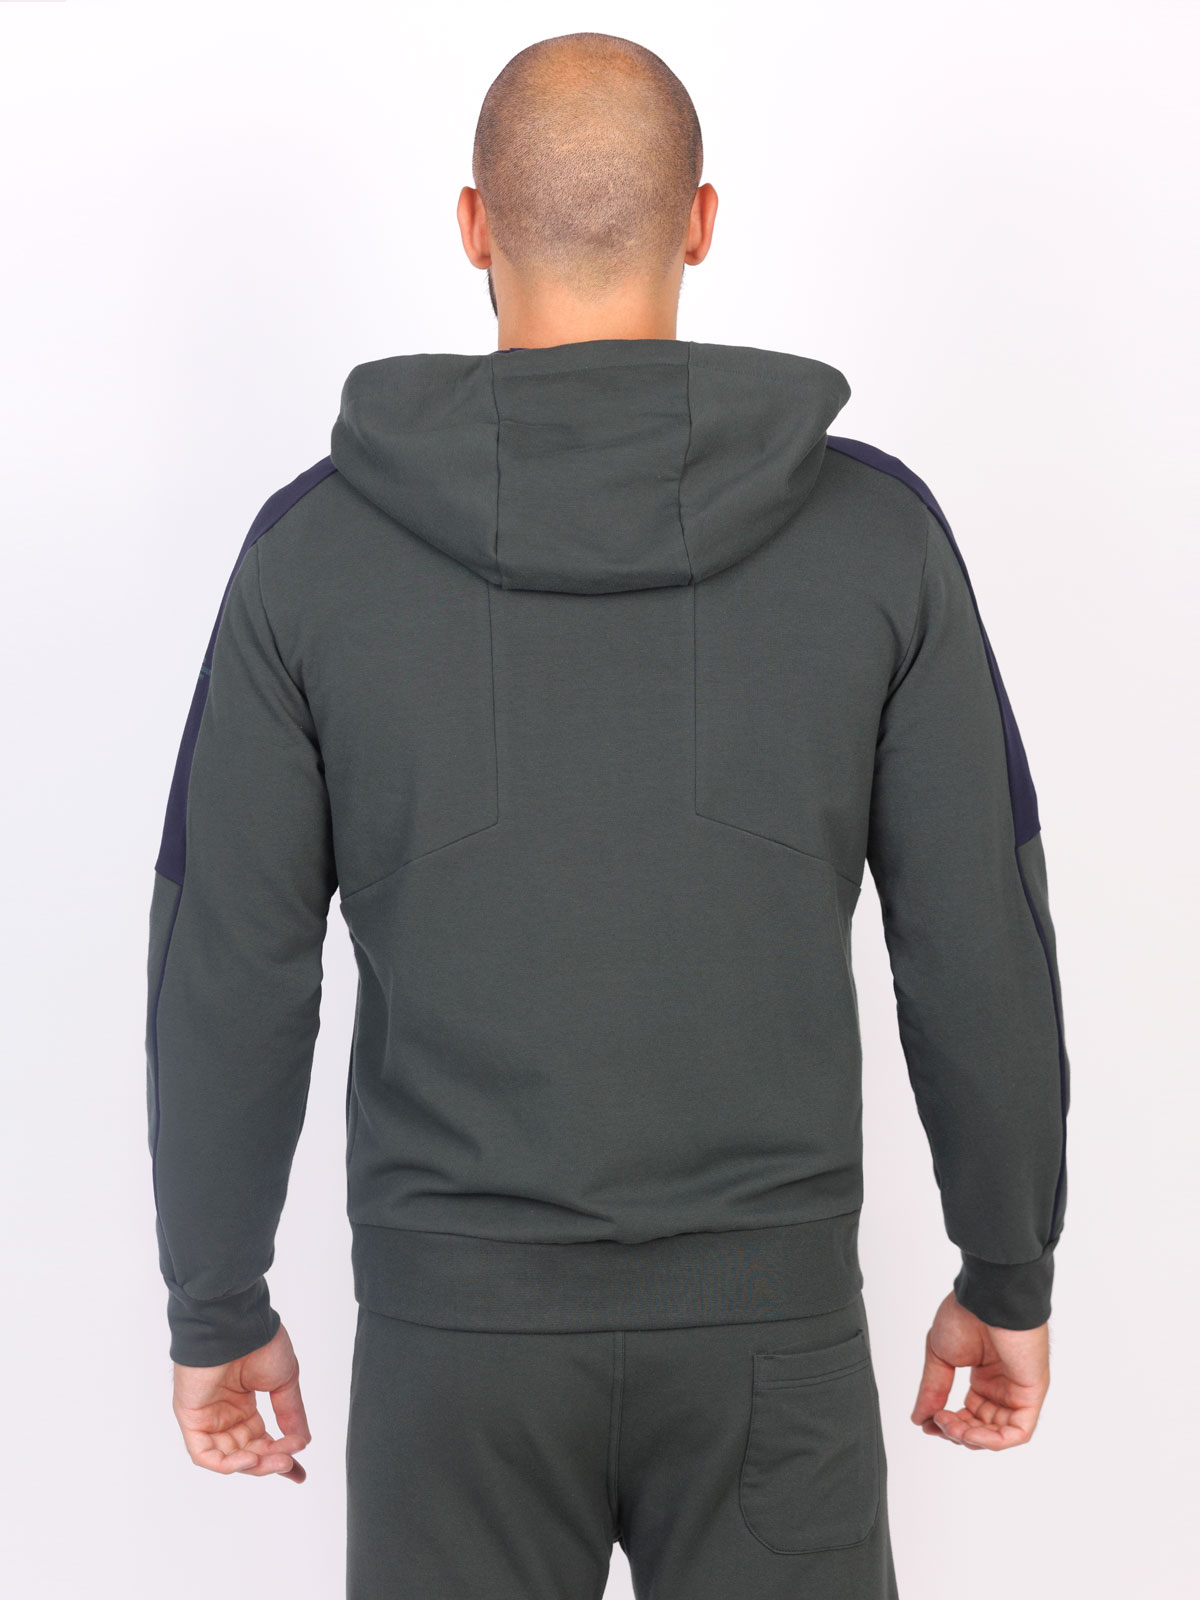 Green hooded sweatshirt - 28130 € 55.12 img2